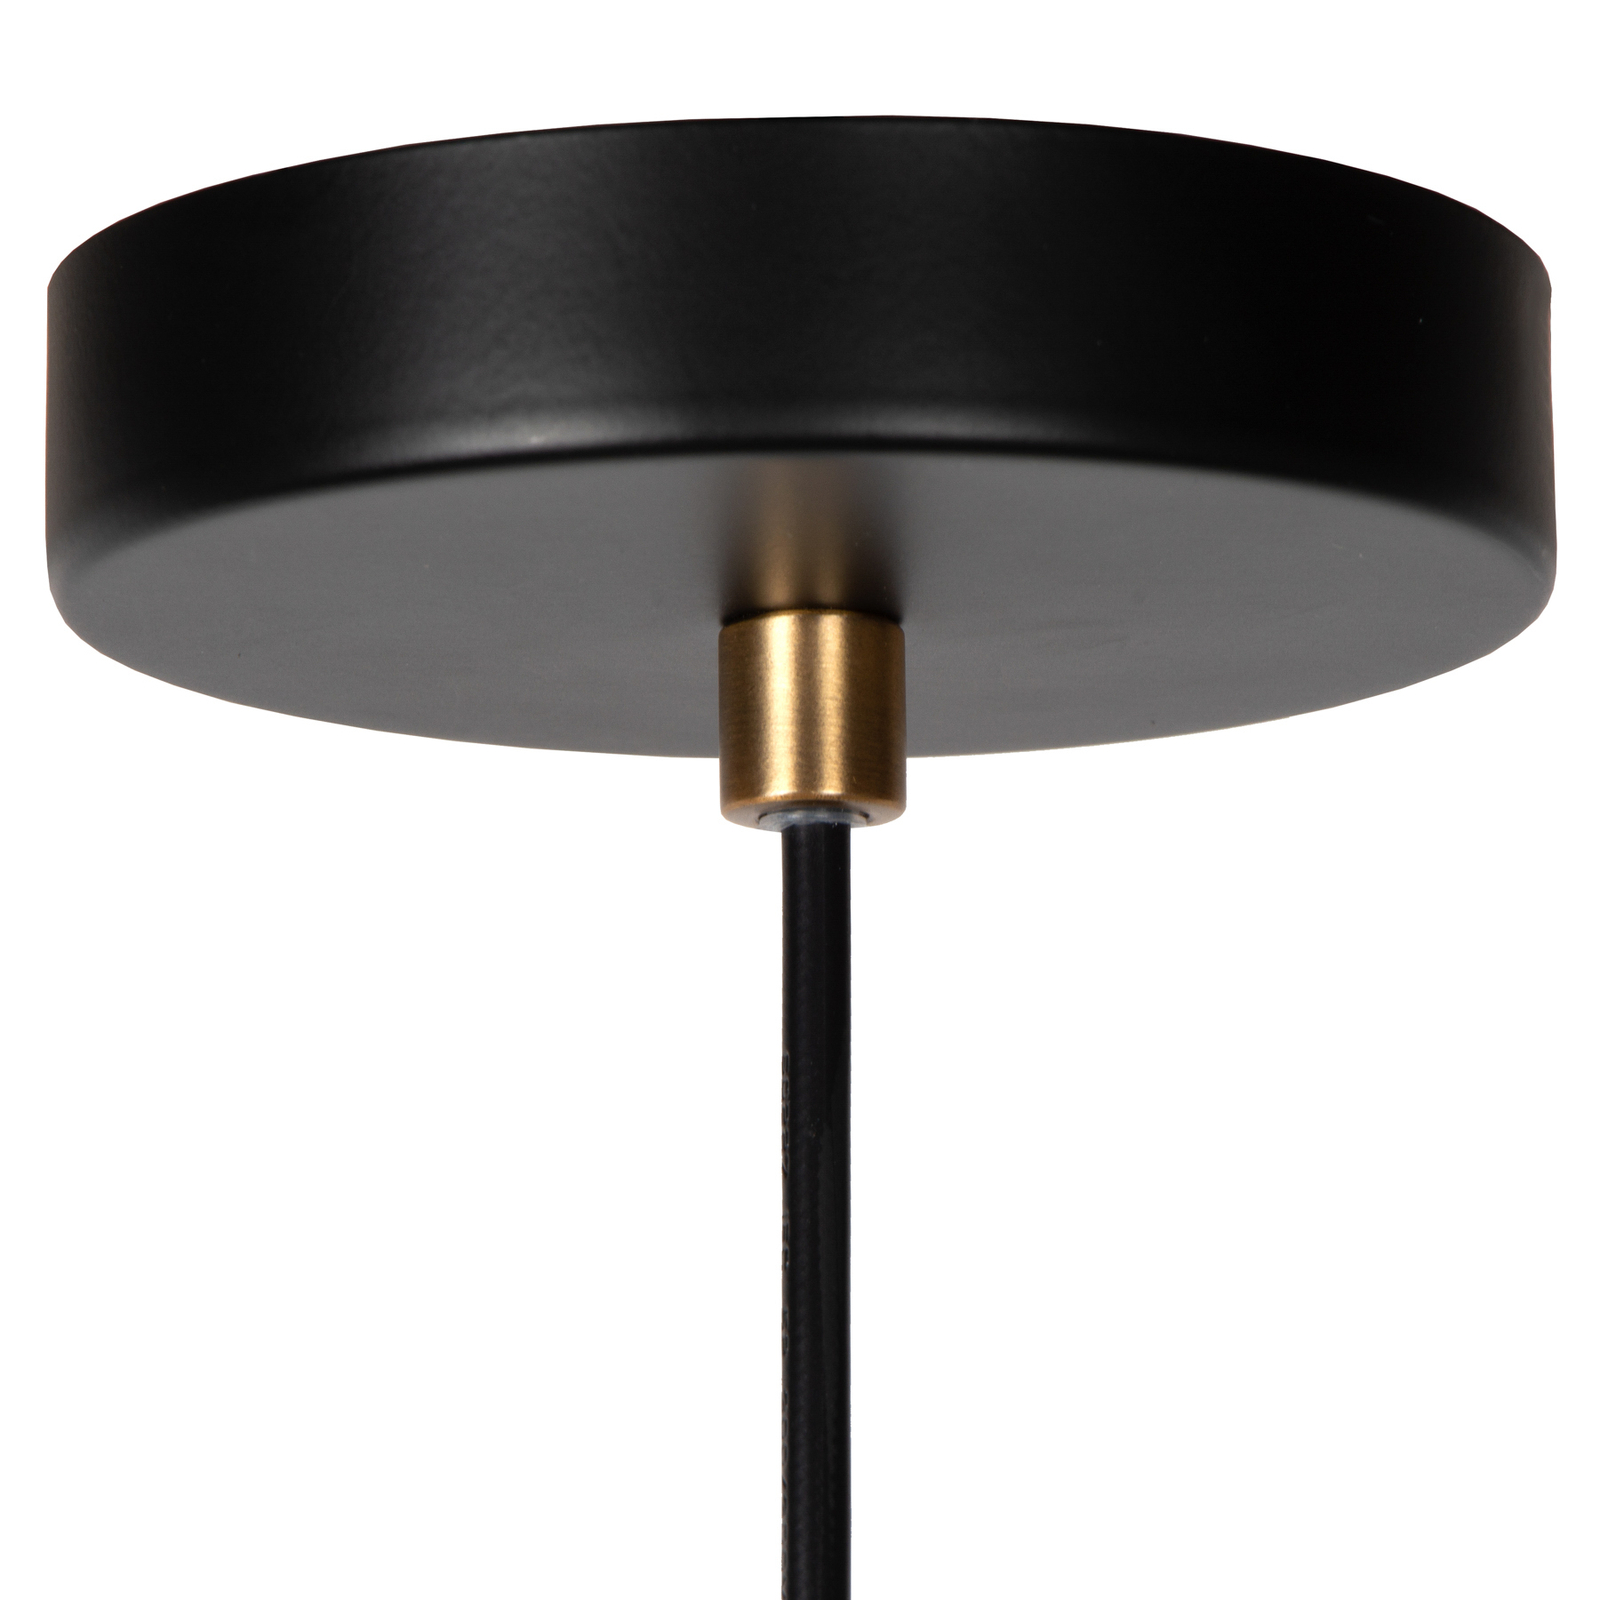 Selin viseća svjetiljka, Ø 25 cm, IP44, crna